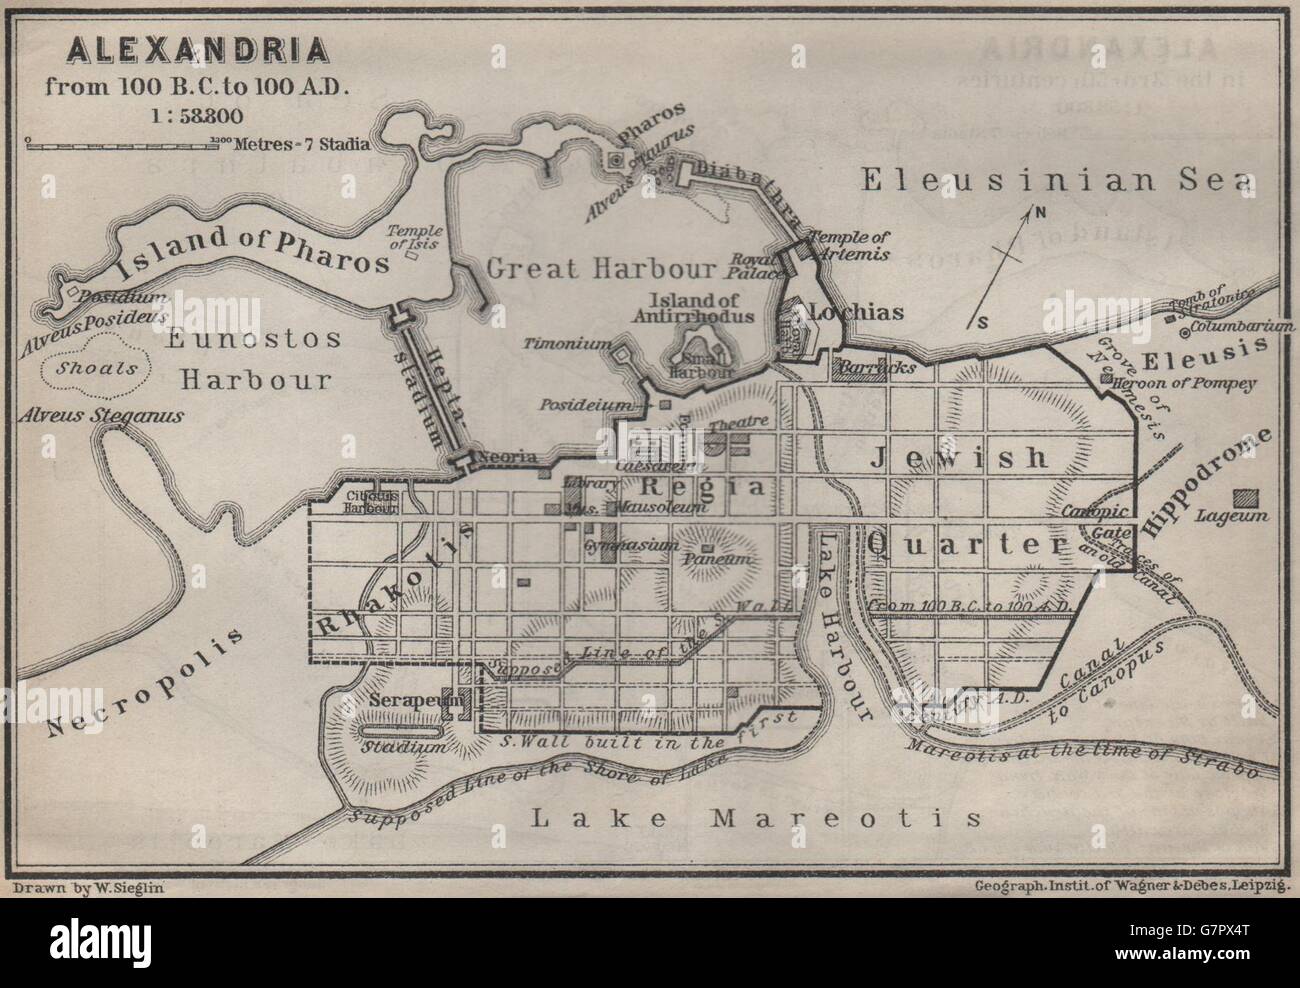 Alexandrie DE 100 BC À 100 AD ville antique city plan. L'Egypte, 1914 Ancien site Banque D'Images